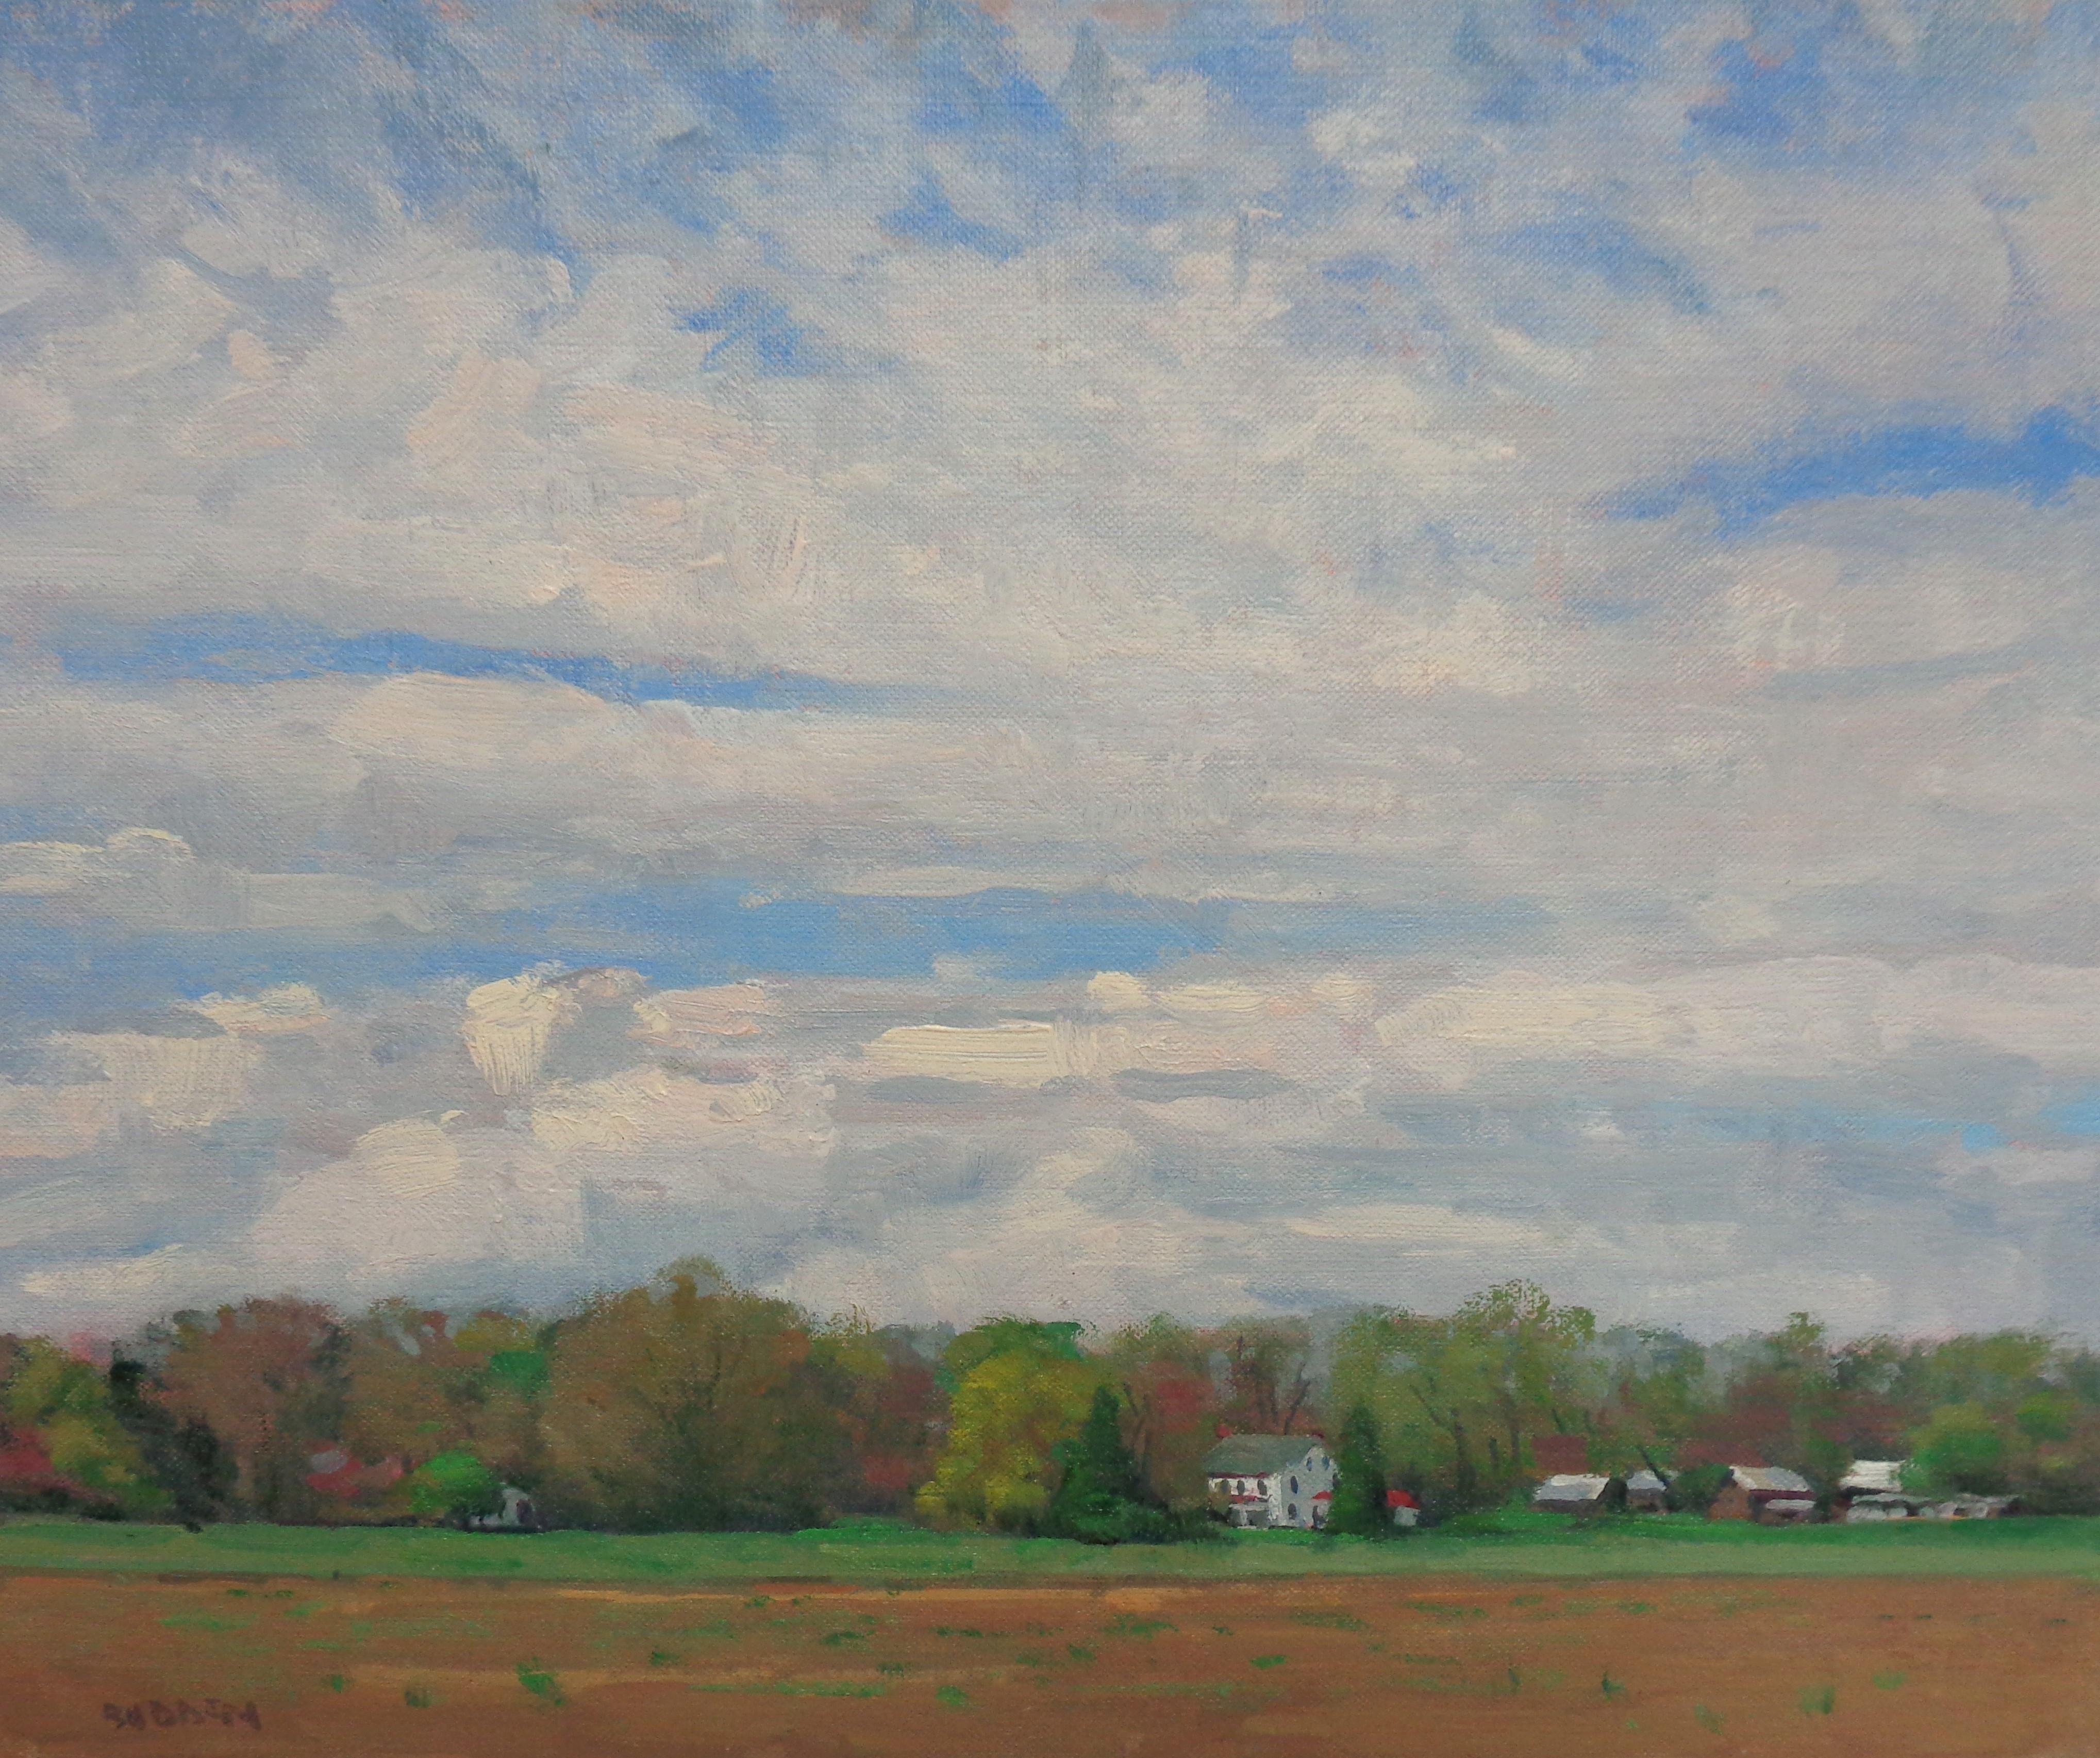 Frühlingshimmel
Öl/Platte
11 x 14 ungerahmt
Frühlingshimmel ist ein wunderschönes impressionistisches Landschaftsölgemälde, das ich in der Nähe meines Studios im Jahr 2020 gemalt habe. Das Gemälde ist auf einer Leinwandtafel gemalt und verströmt die